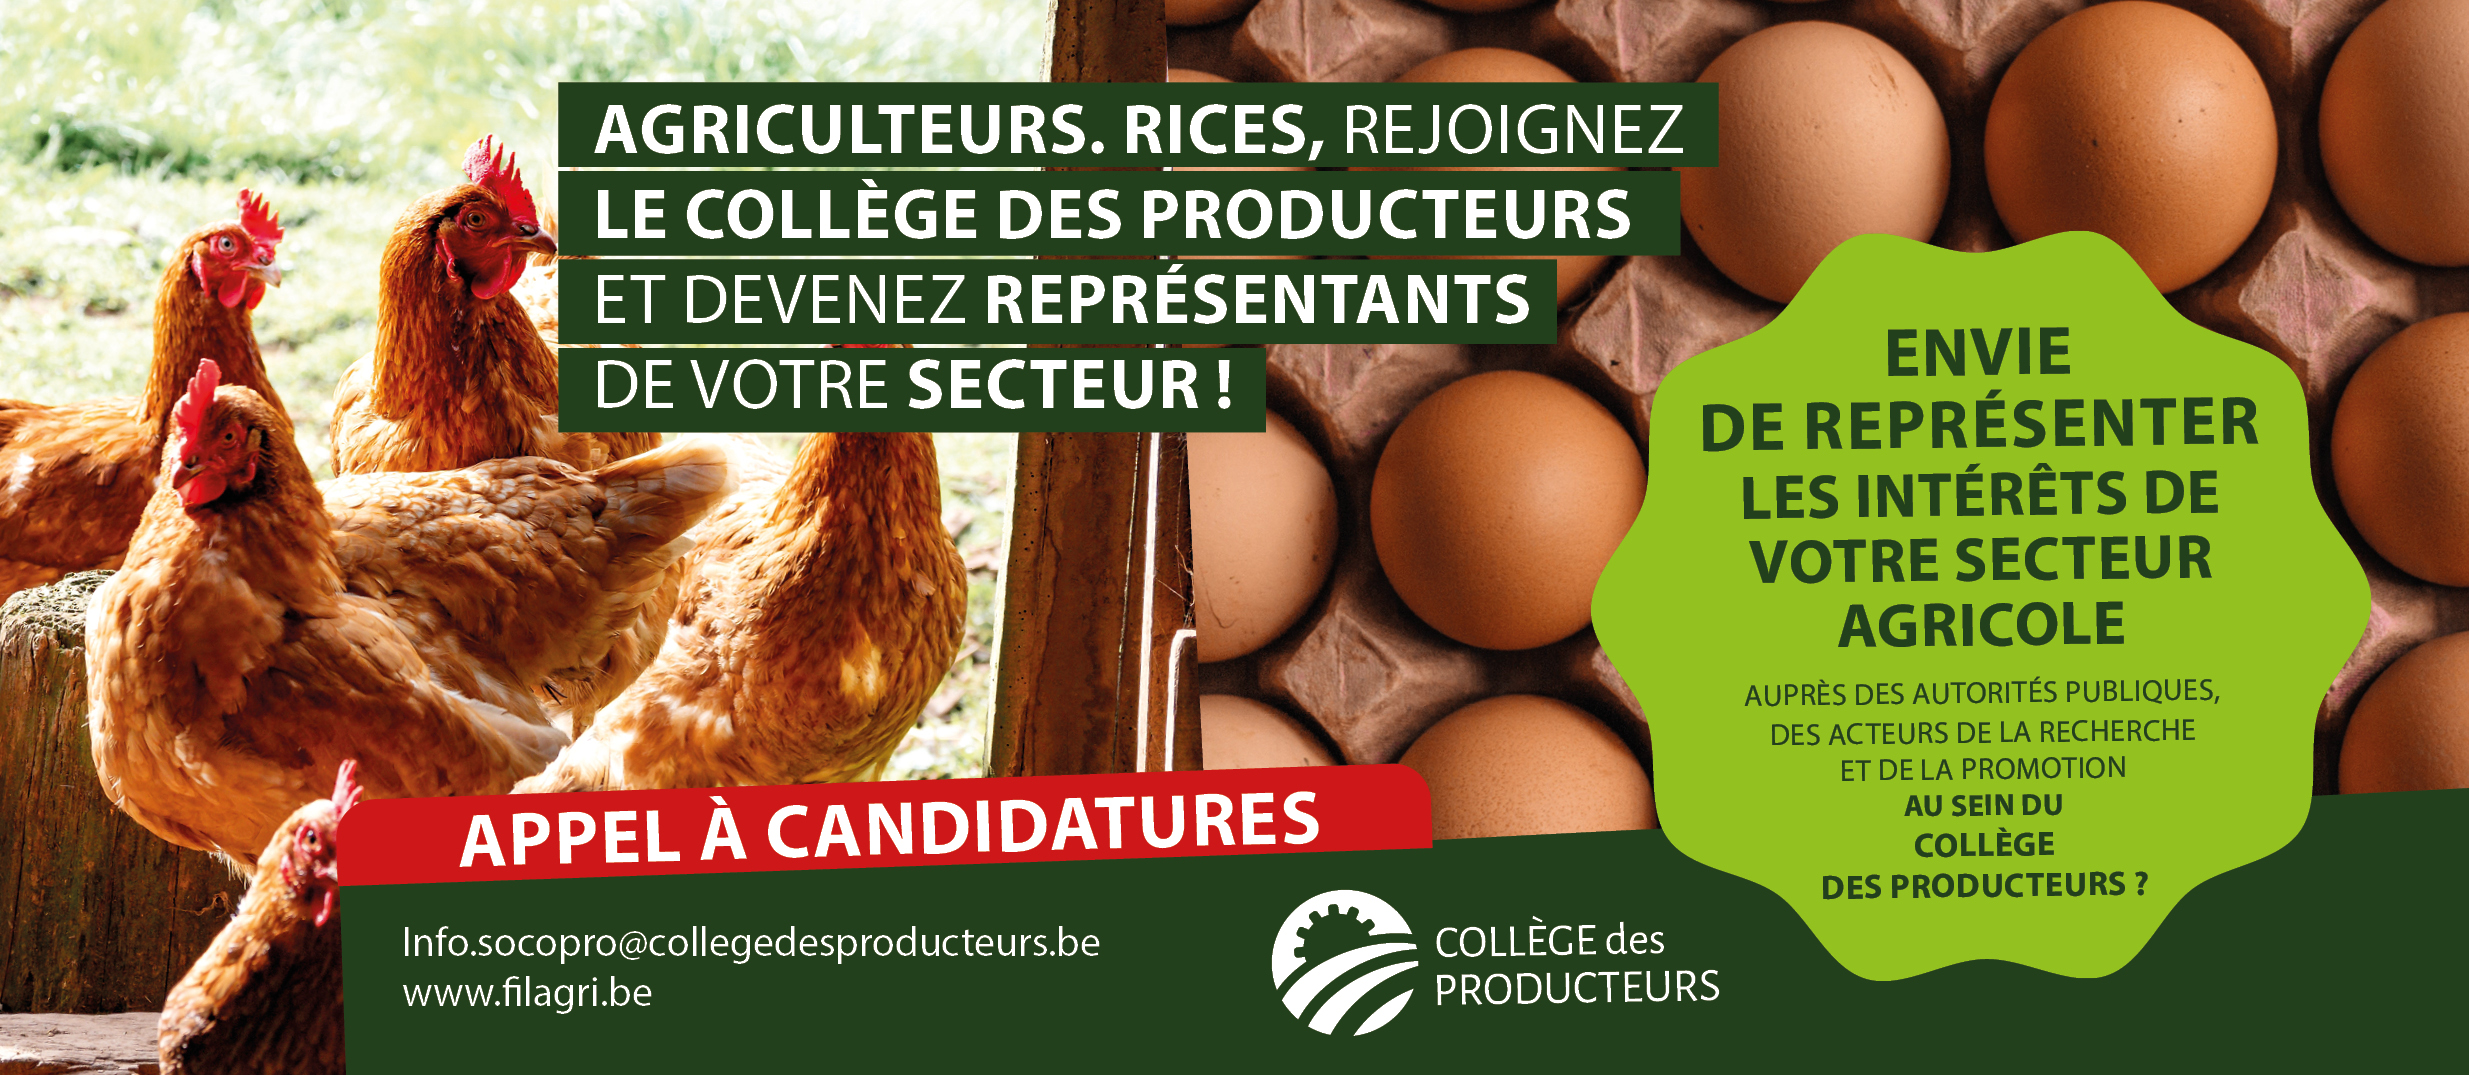 [Elections au Collège des Producteurs] Appel aux producteurs avicoles et cunicoles : représentez votre secteur au sein du Collège des Producteurs !